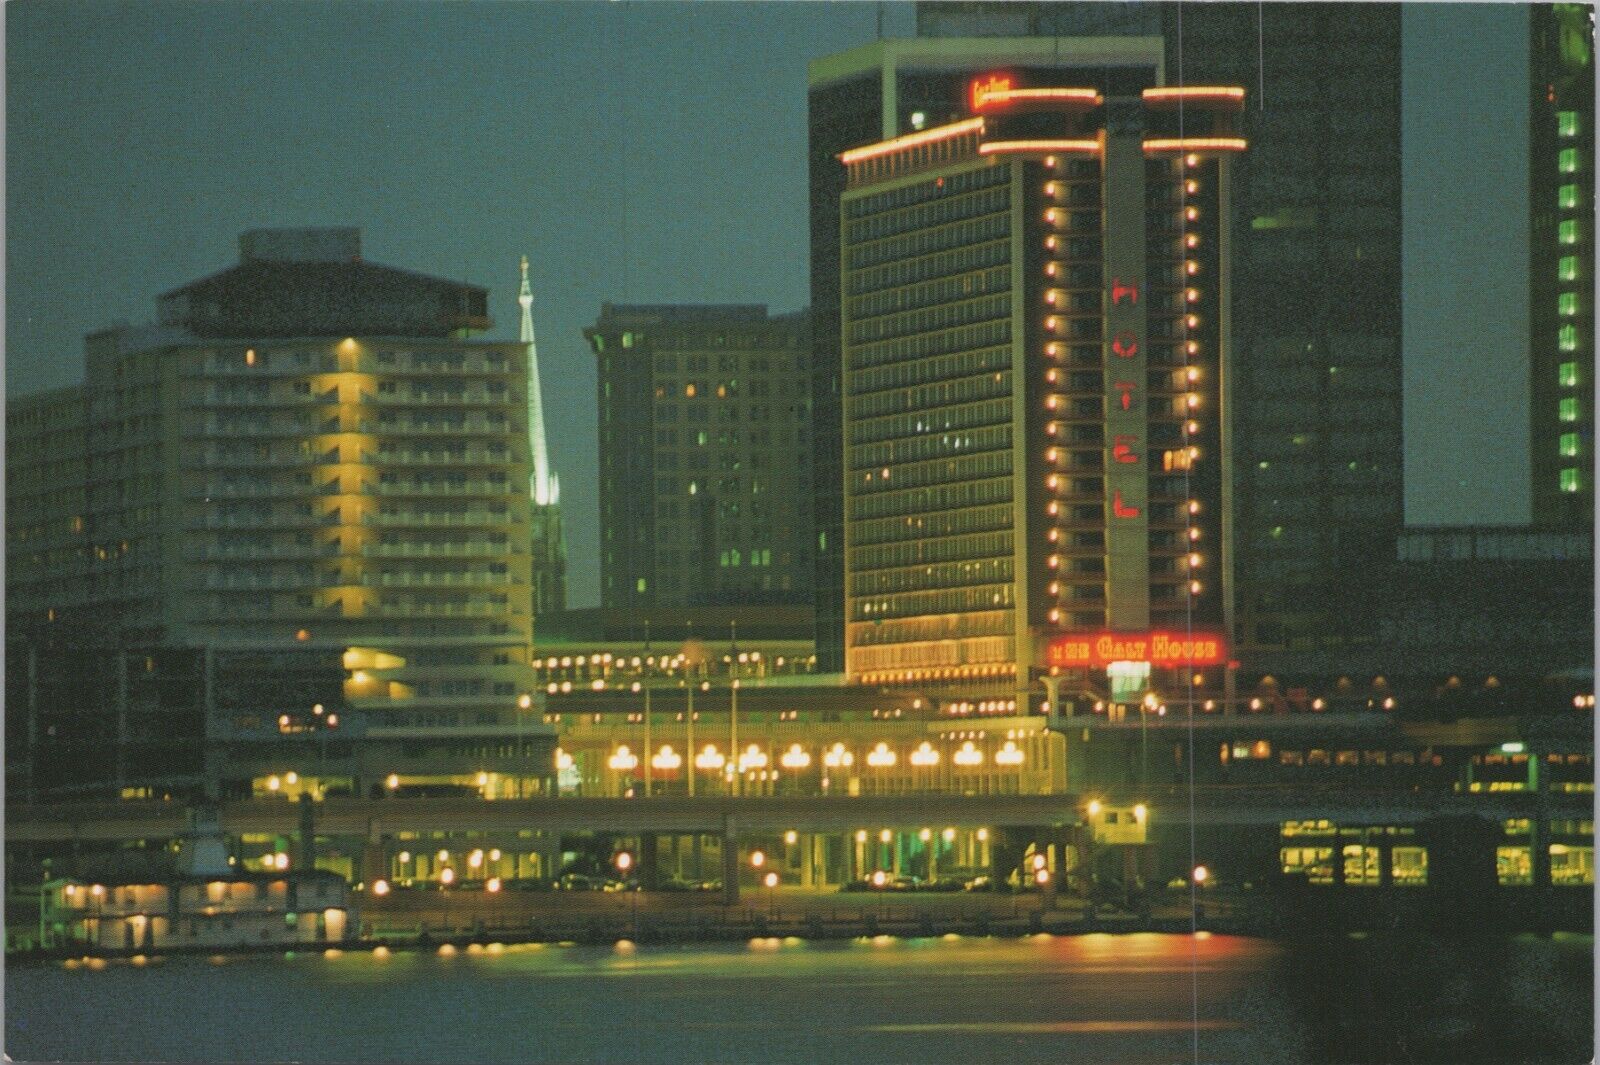 The Galt House Hotels Louisville Kentucky KY Night View UNP 1980s Postcard 7738a